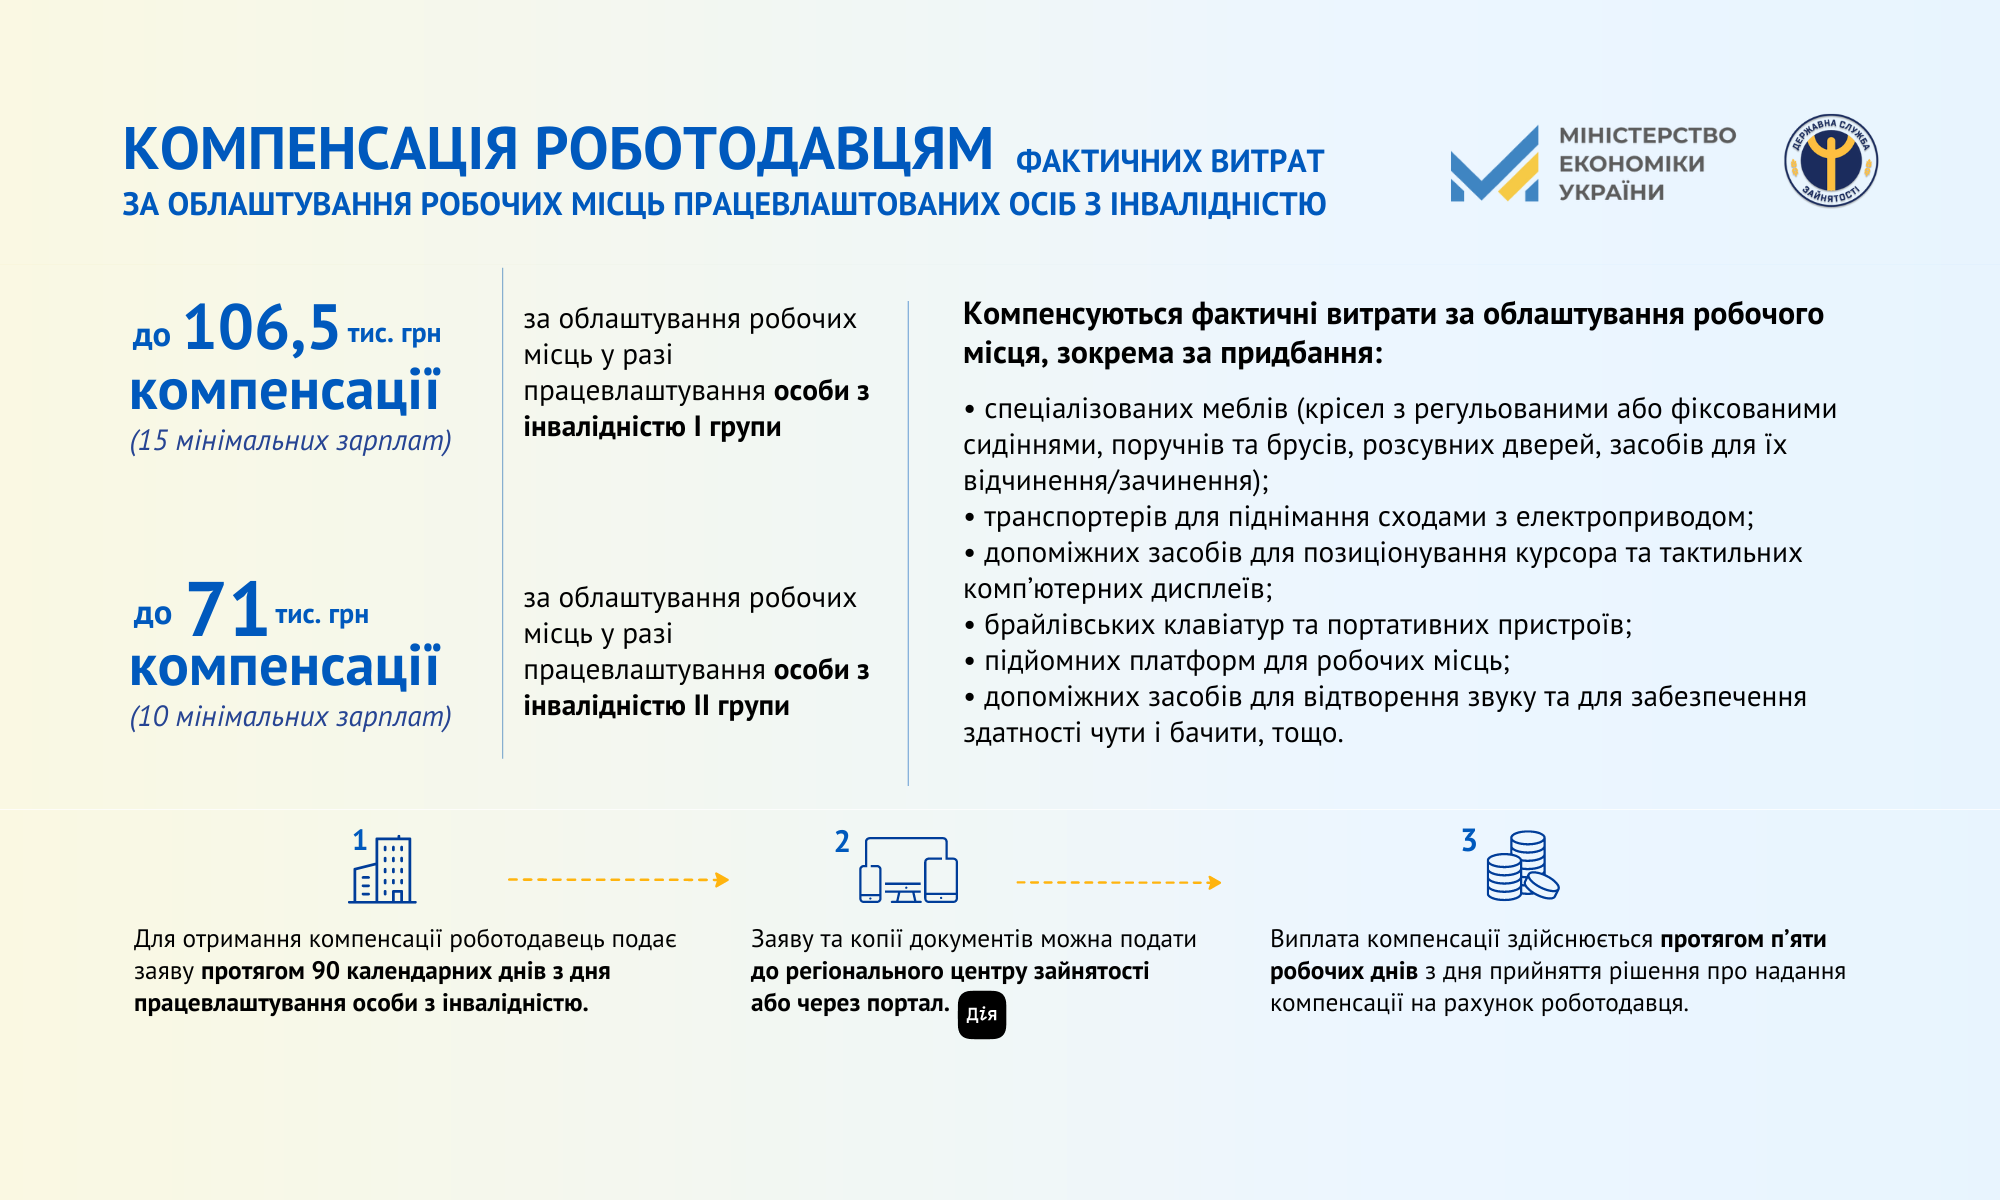 Більше 80% фахівців з інвалідністю в Україні не мають роботи. Як держава планує залучити їх до ринку праці?